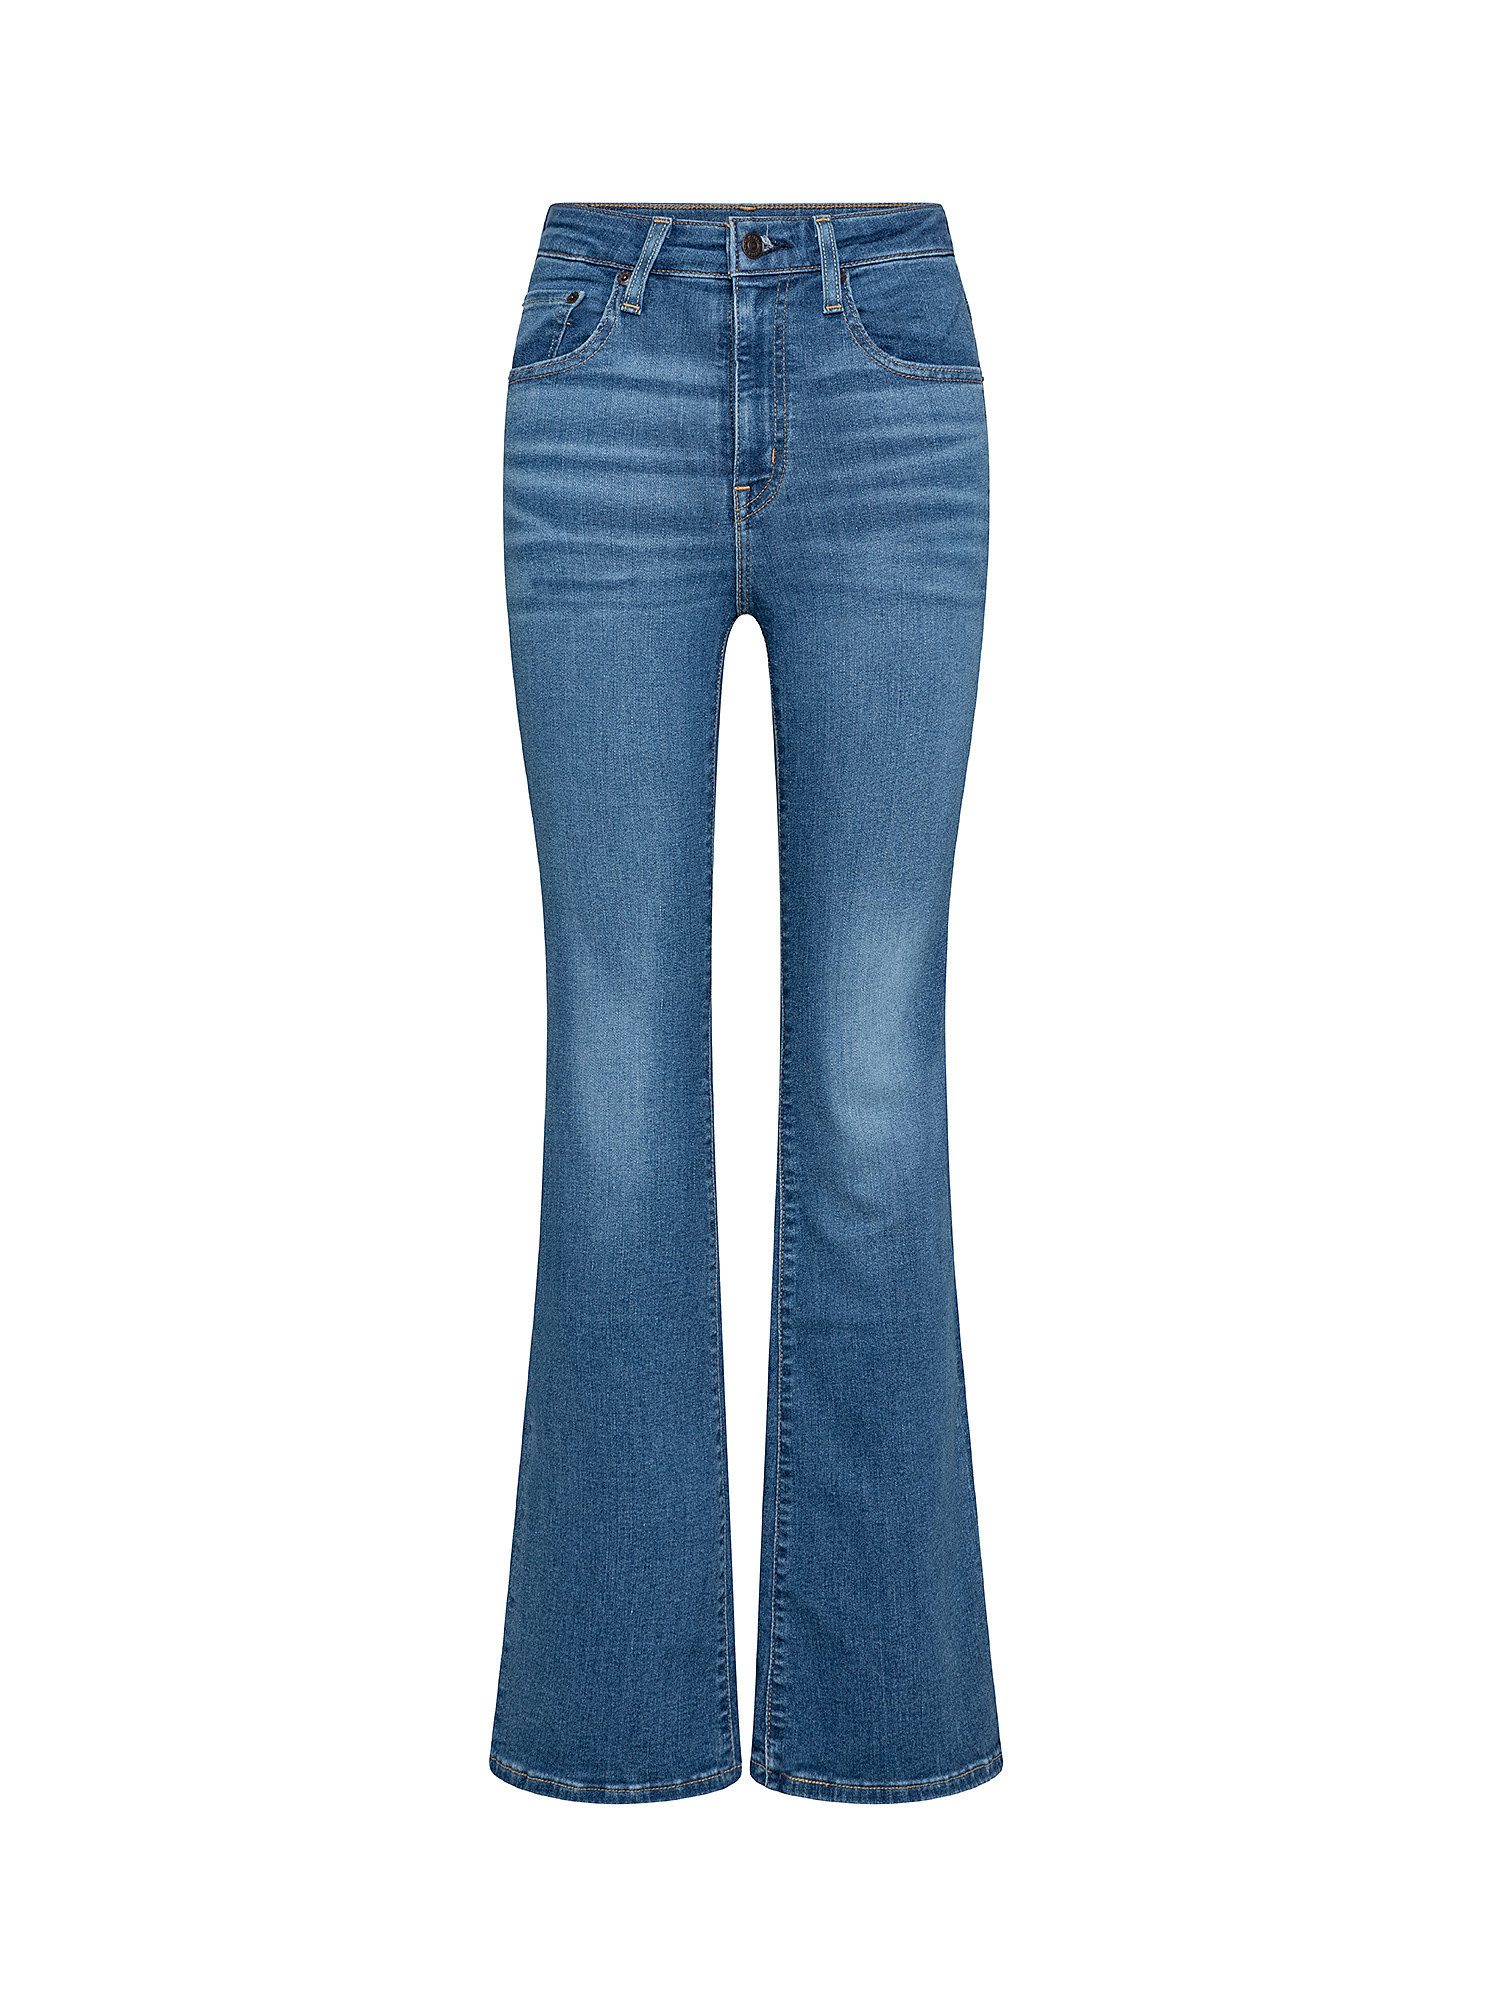 726 HR Flare jeans, Blue, large image number 0